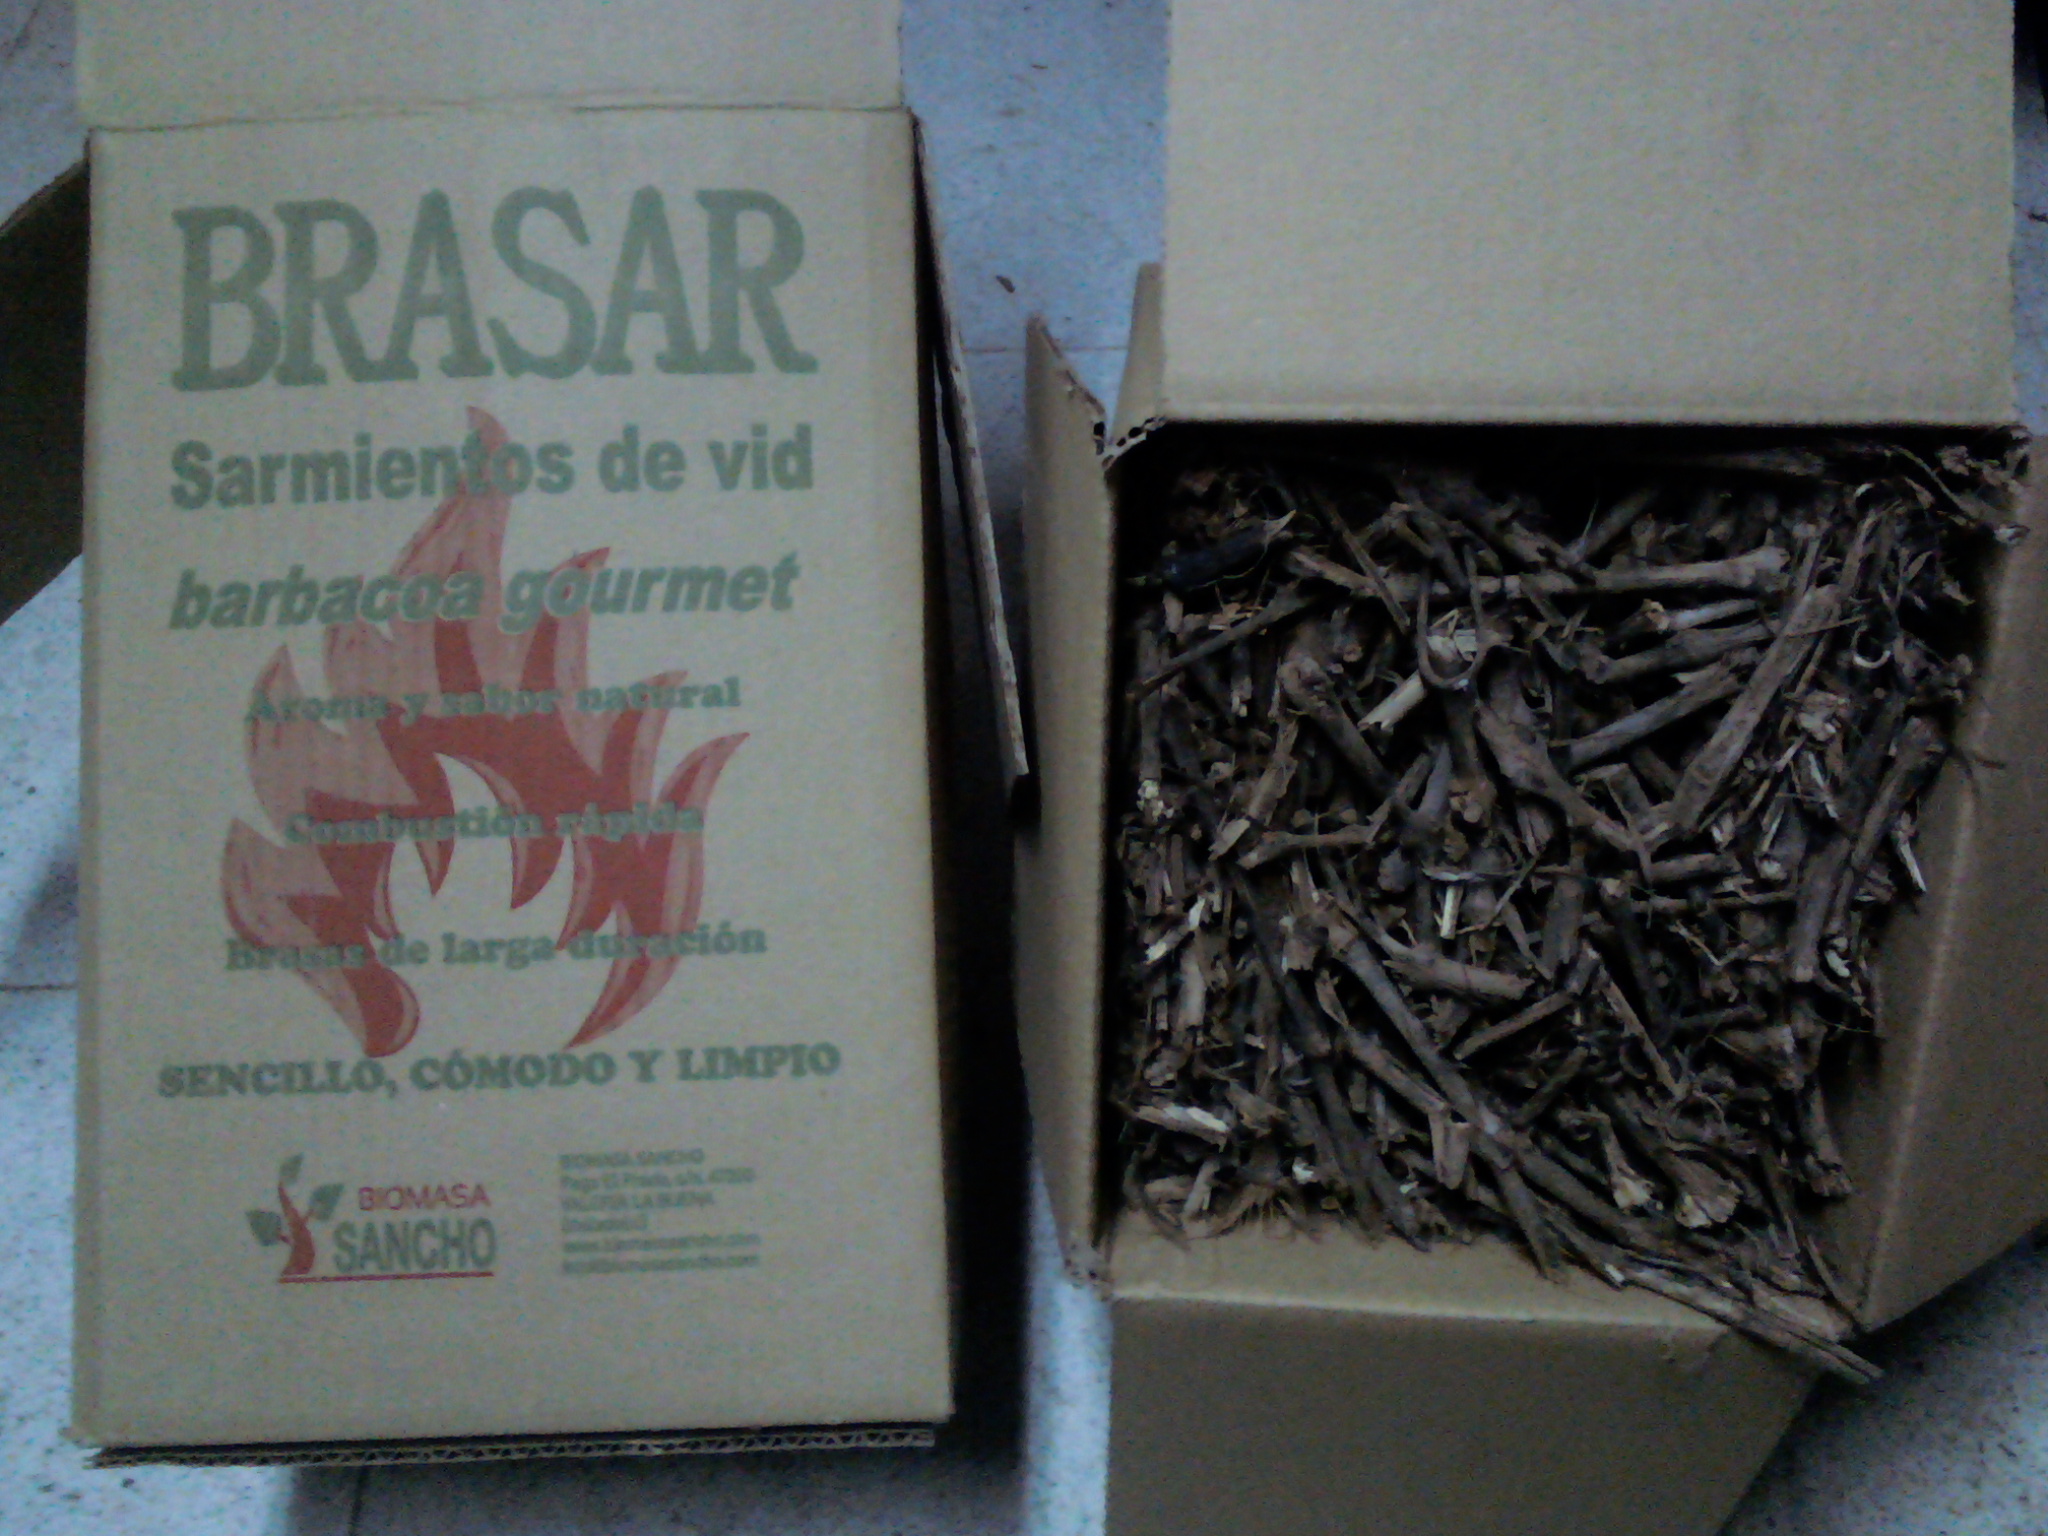 Brasar - Biomasa Sancho